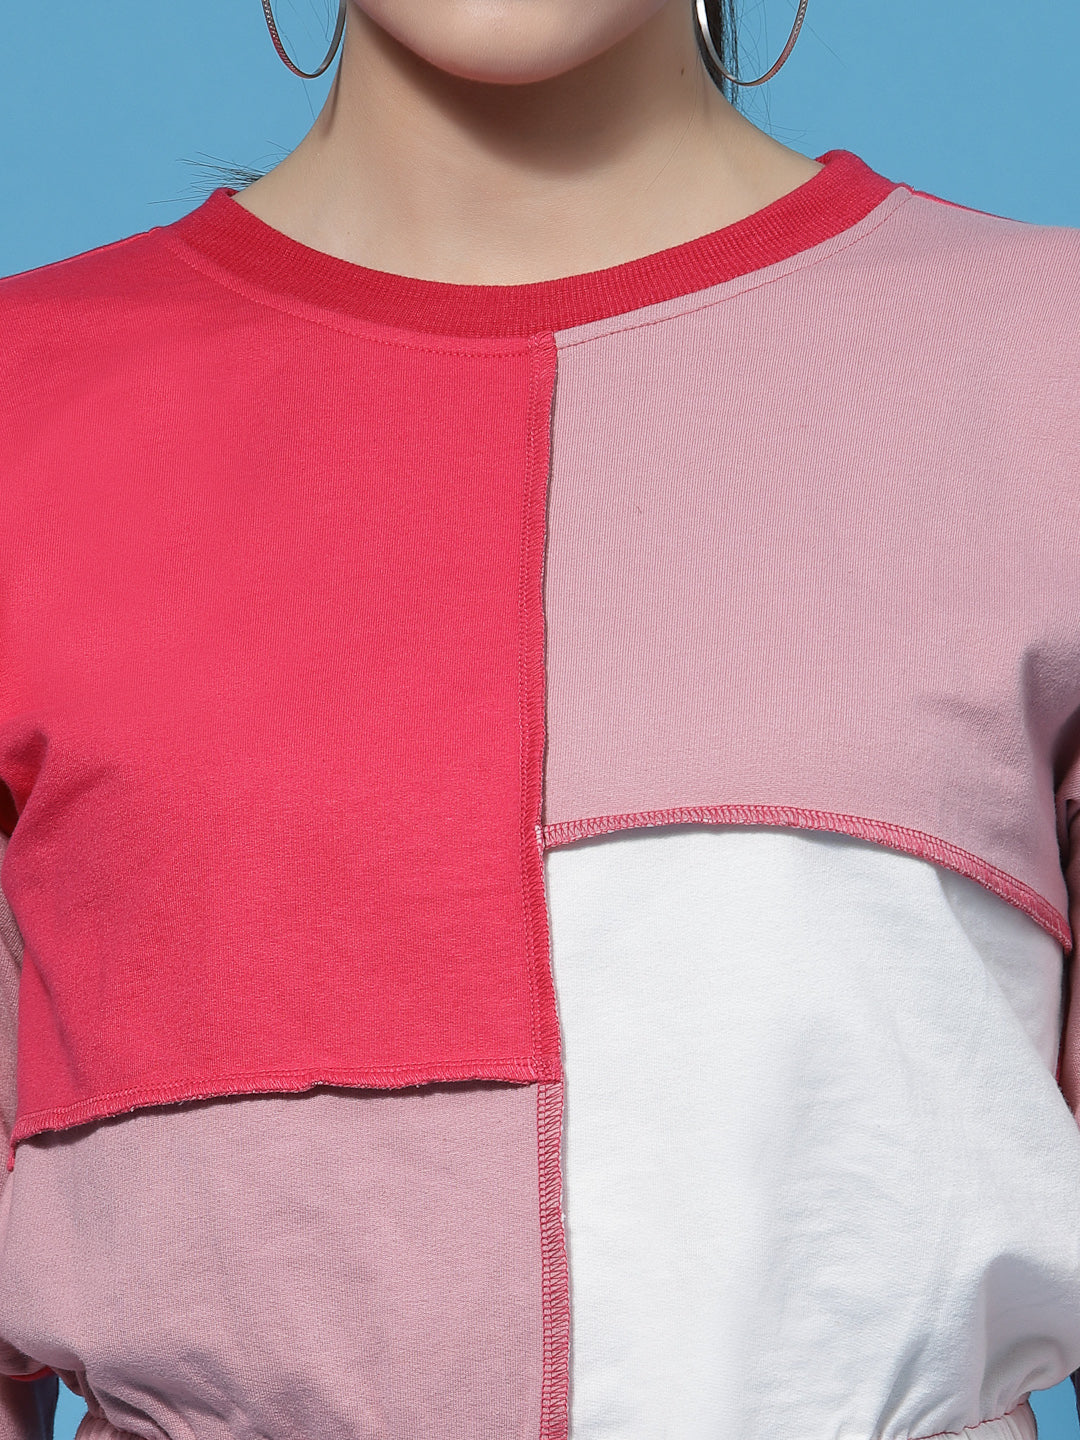 Athena Women Colourblocked Cotton Sweatshirt - Athena Lifestyle